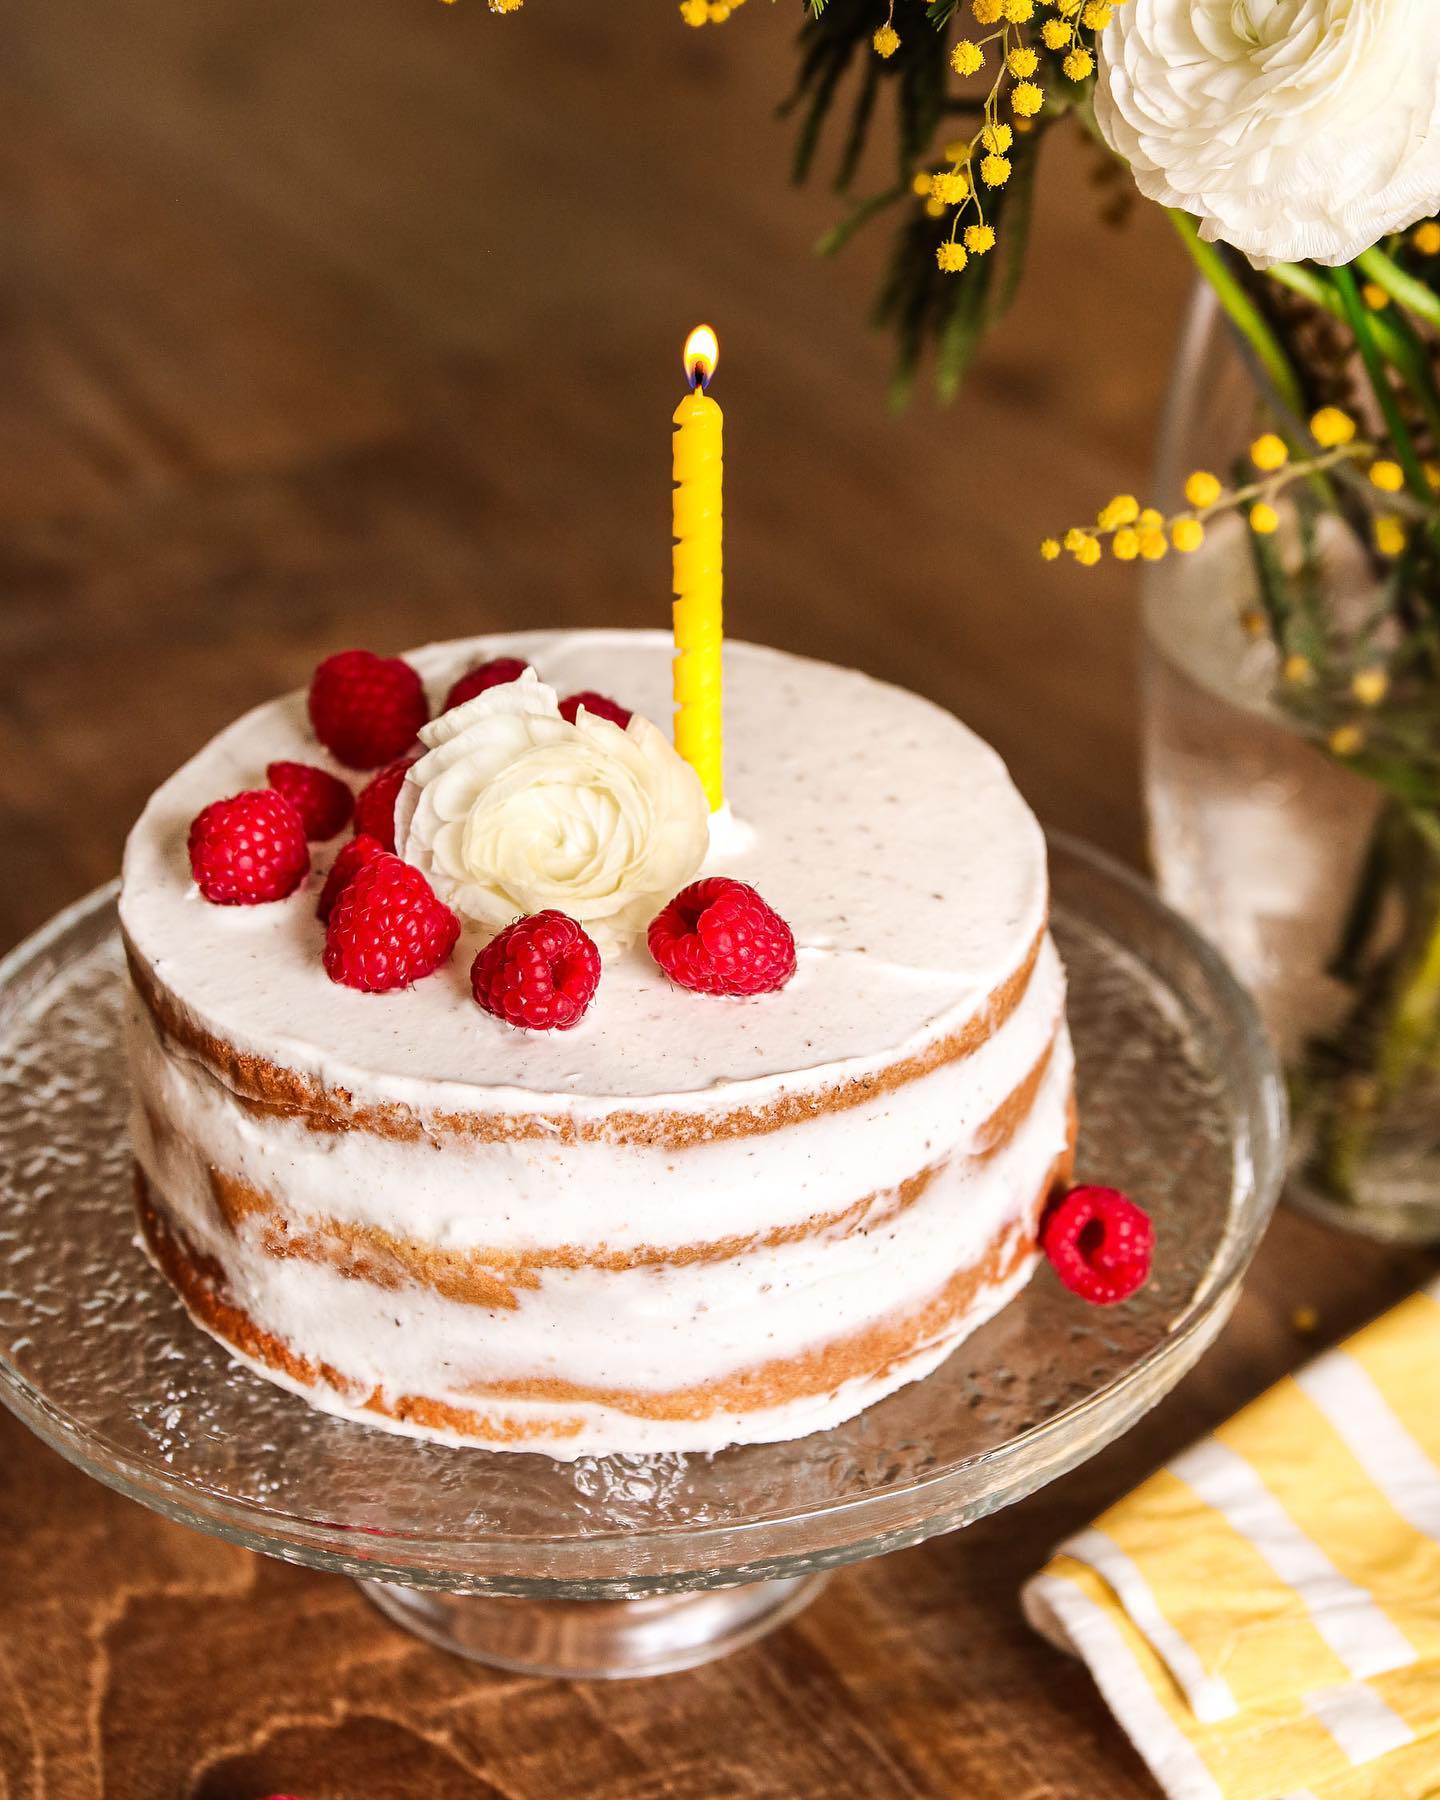 Un naked cake sans lactose (avec de la crème de coco sucrée et vanillée), réalisé pour un shooting photo culinaire thème ‘anniversaire’ il y a quelques jours 📸🎂

Et je profite de ce post pour souhaiter un très bel anniversaire à ma moitié @simonlejeune qui fête ses 31 ans aujourd’hui 🤍🥰

#photographieculinaire #gateauanniversaire #birthdaycake #nakedcake #layercake #gateauaetage #bonanniversaire #photoculinaire #rennes #framboises #mimosa #nakedcakes